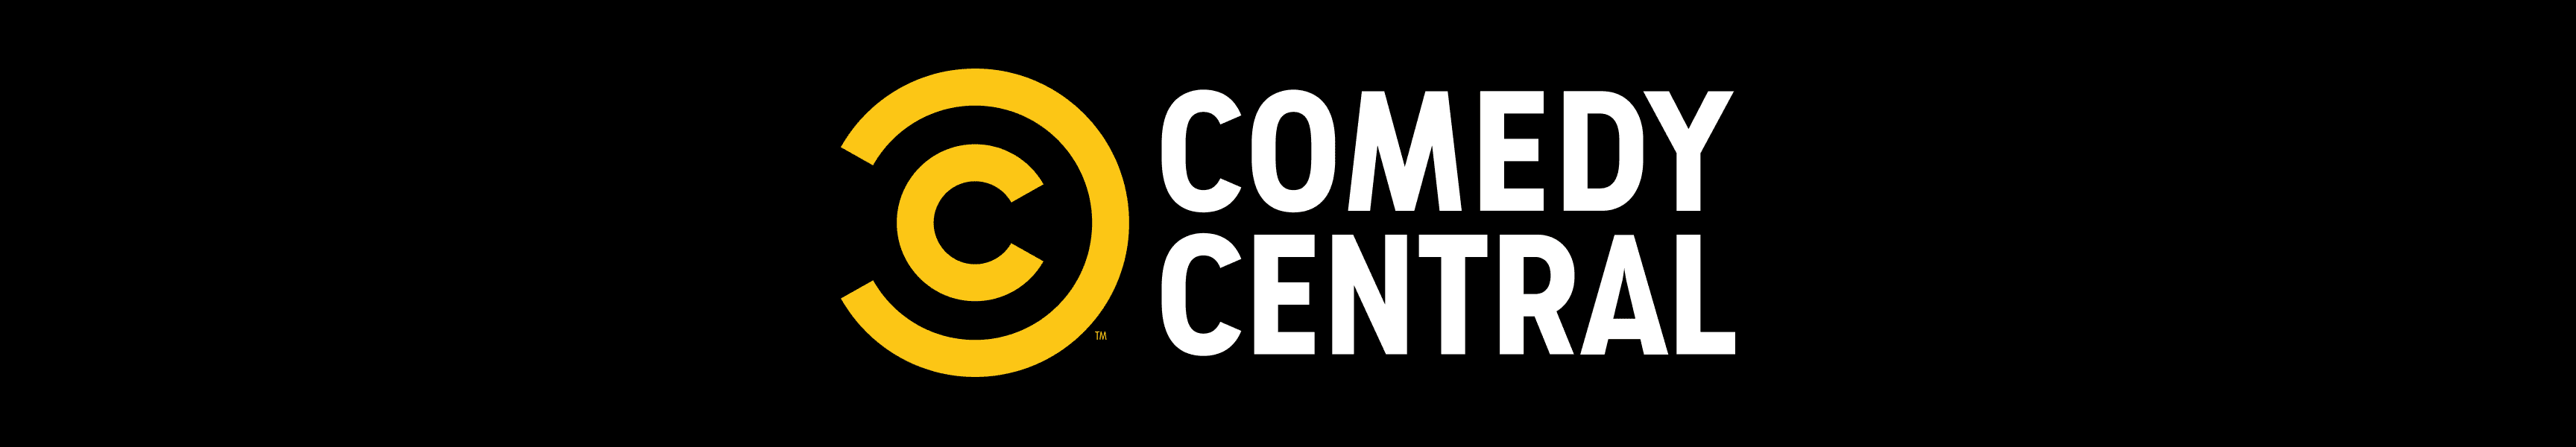 Comedy Central Camisetas de manga larga